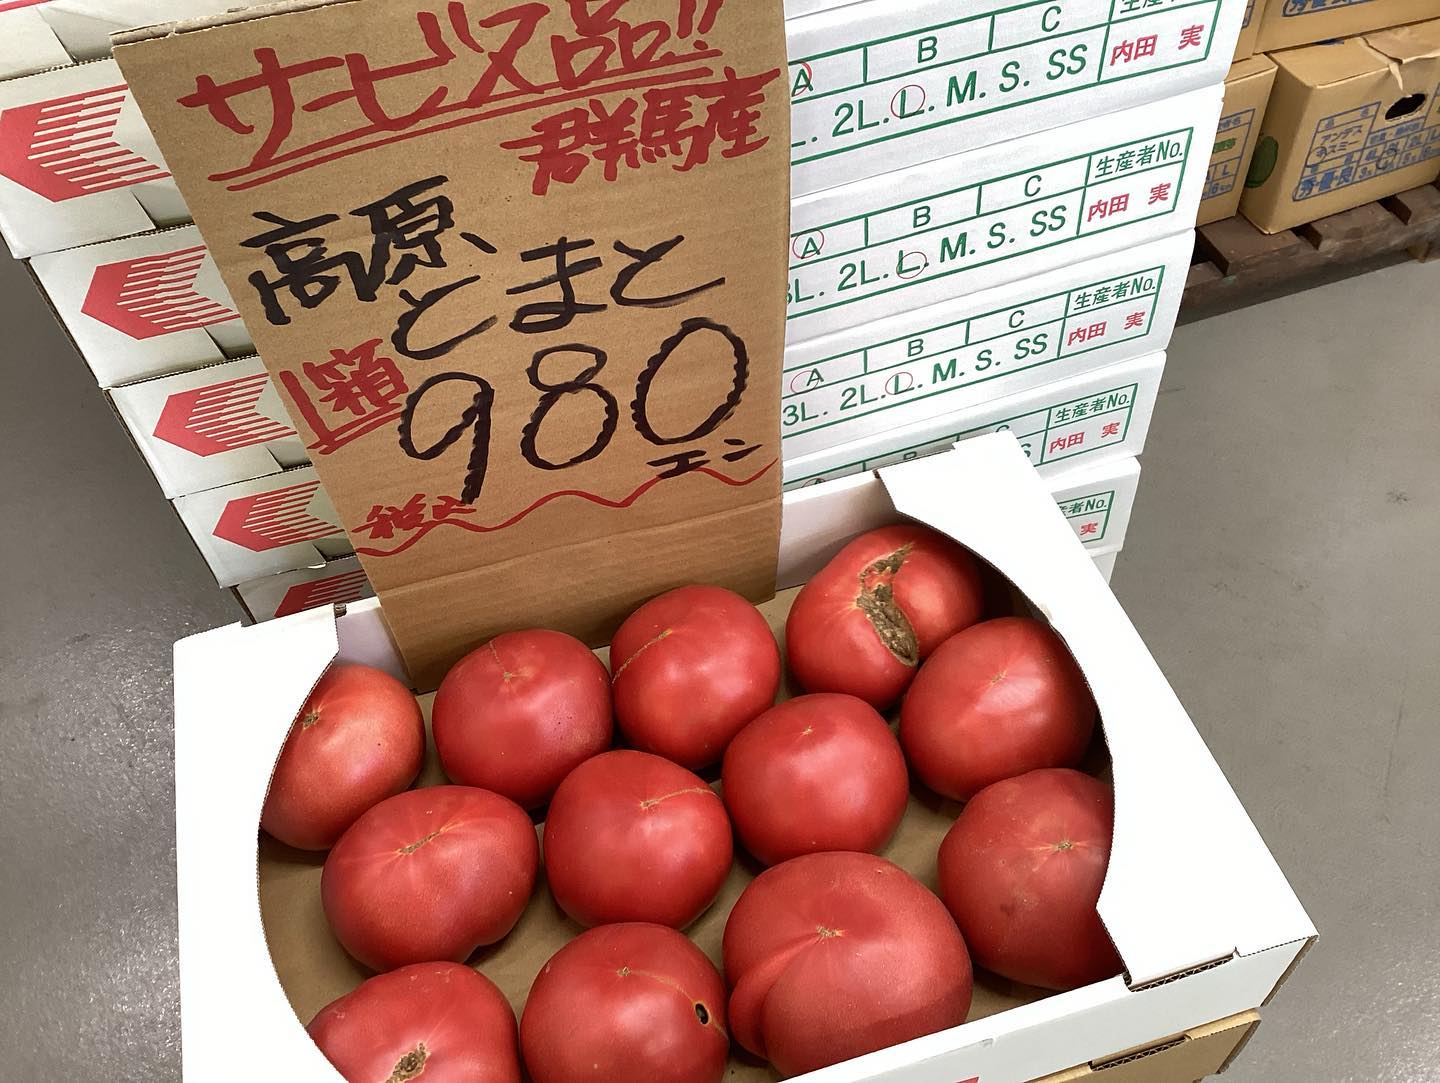 おはようございます
8/4日（金）
11:00〜18:30

本日の商品紹介

トマト箱とてもお買い得です️
甘くて美味しいですよ️

今日も1日よろしくお願いします🏻‍♀️